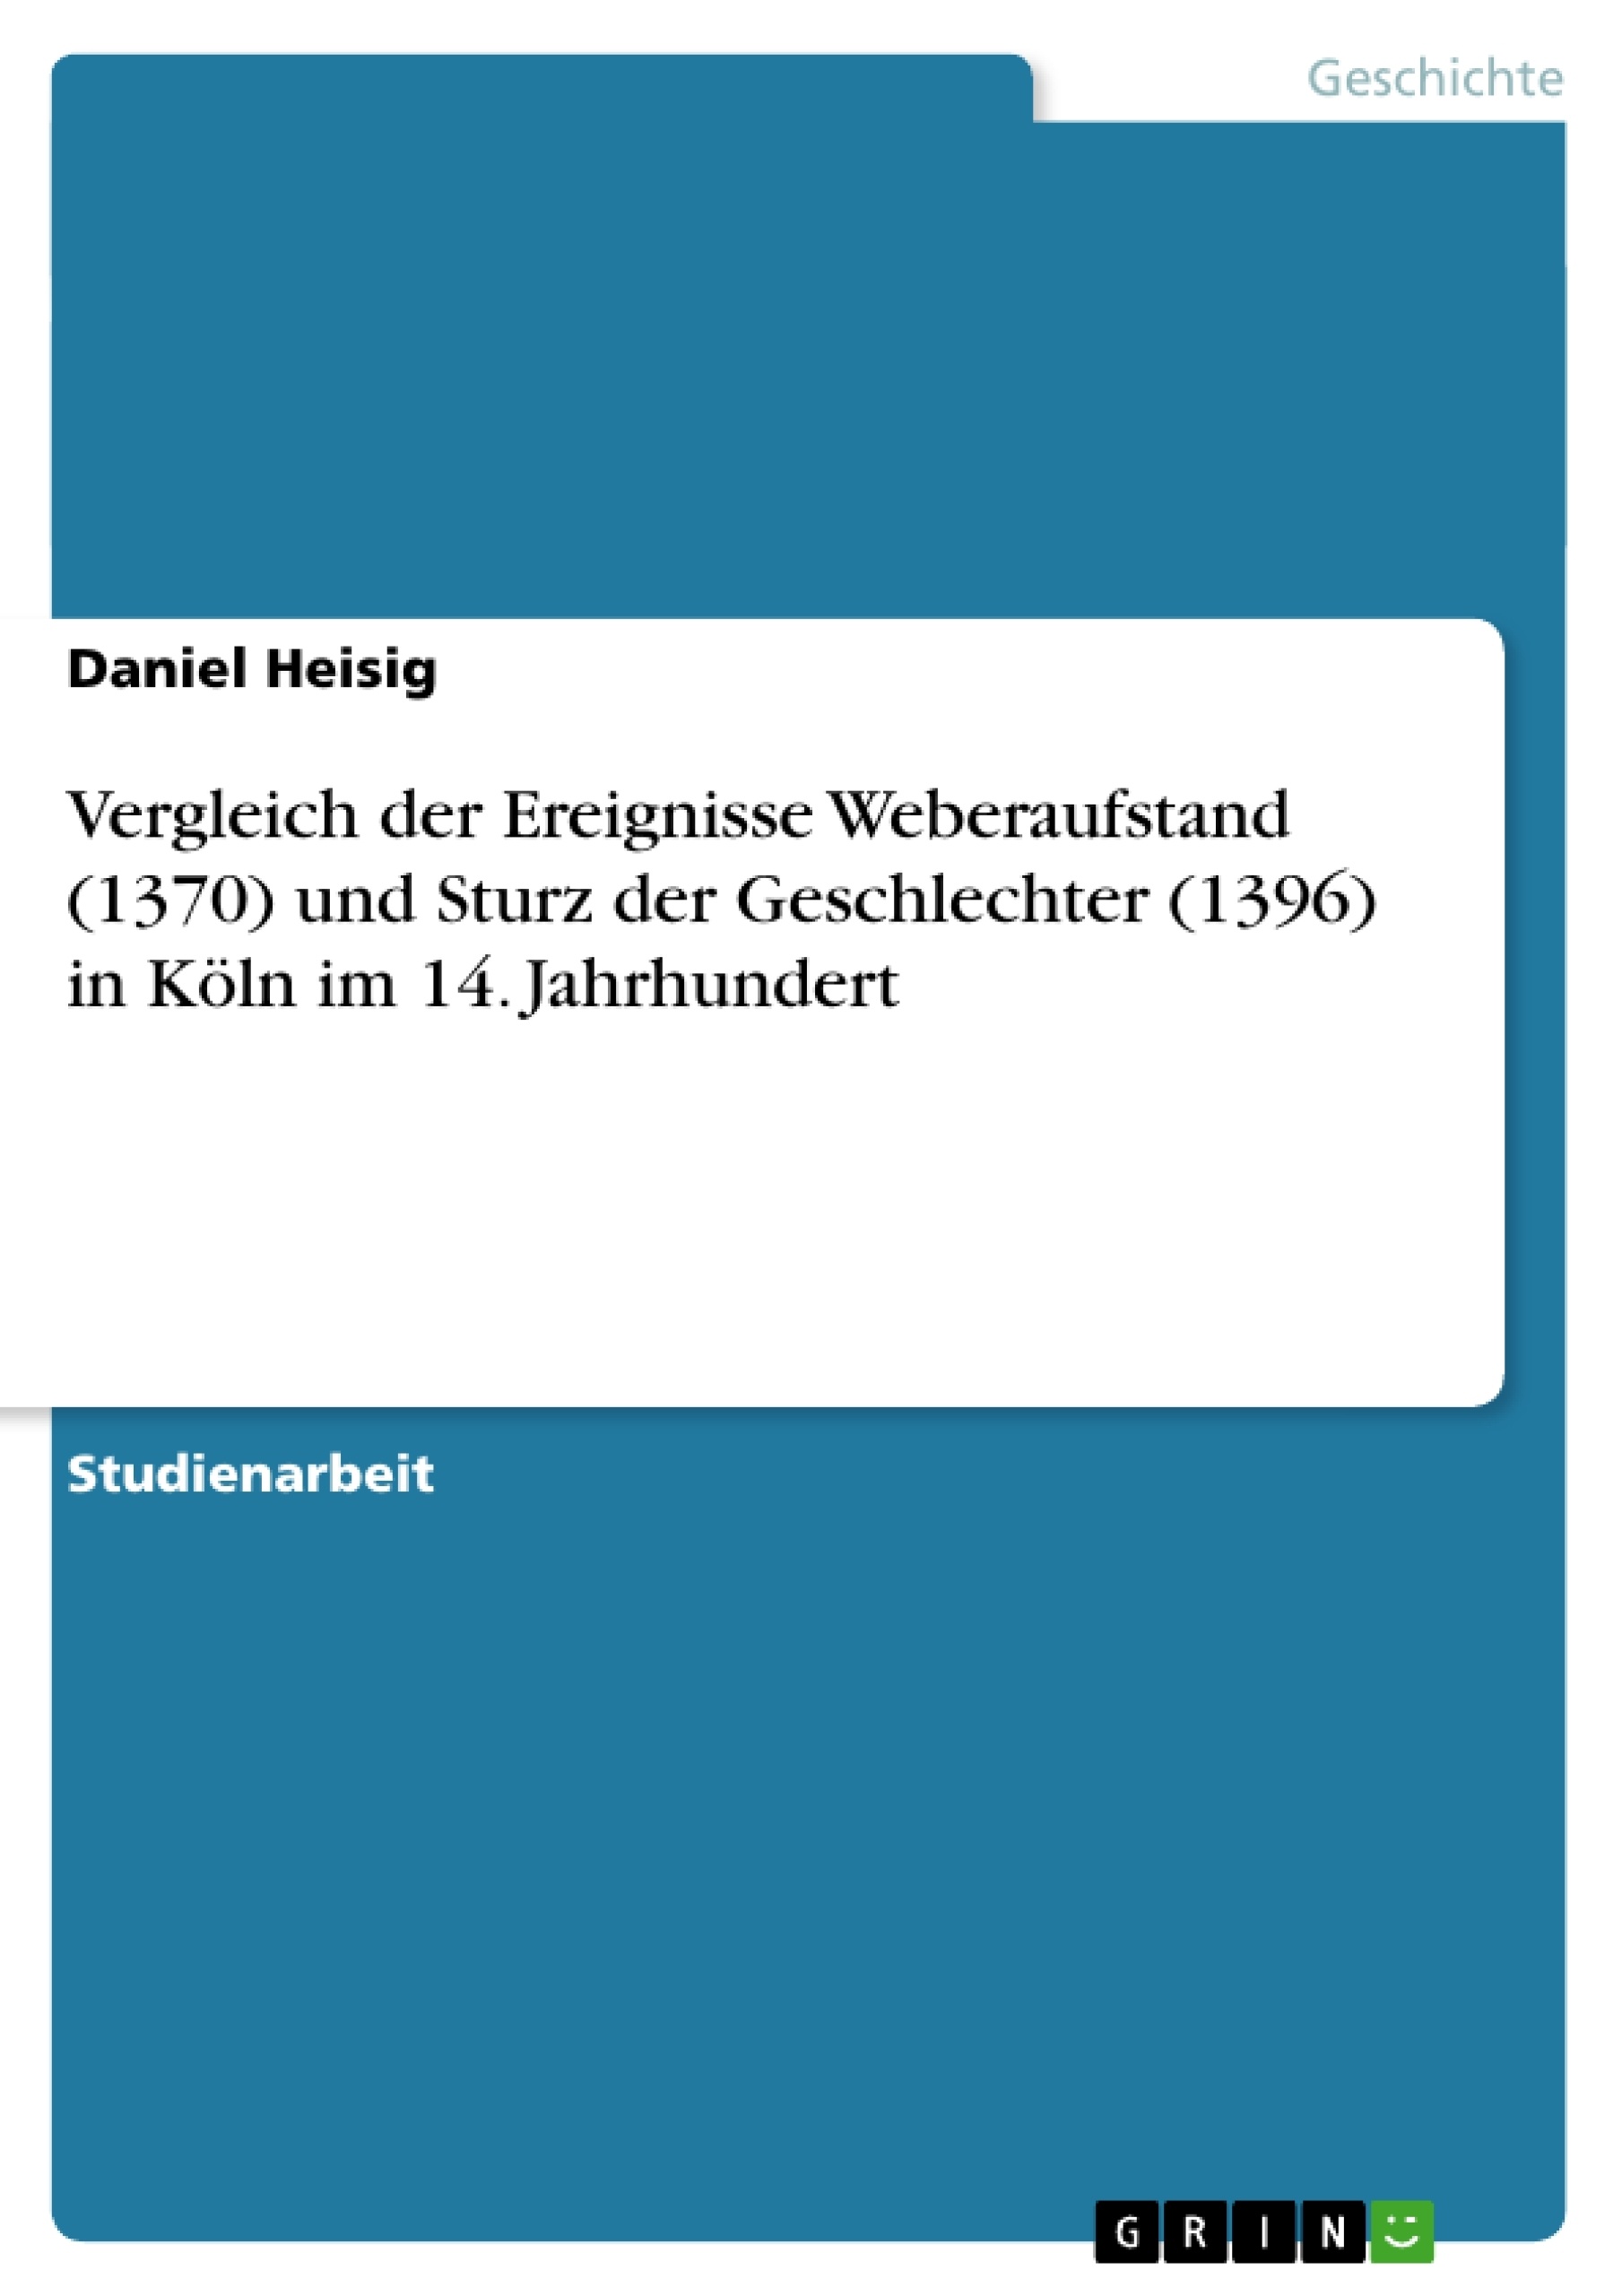 Titre: Vergleich der Ereignisse Weberaufstand (1370) und Sturz der Geschlechter (1396) in Köln im 14. Jahrhundert